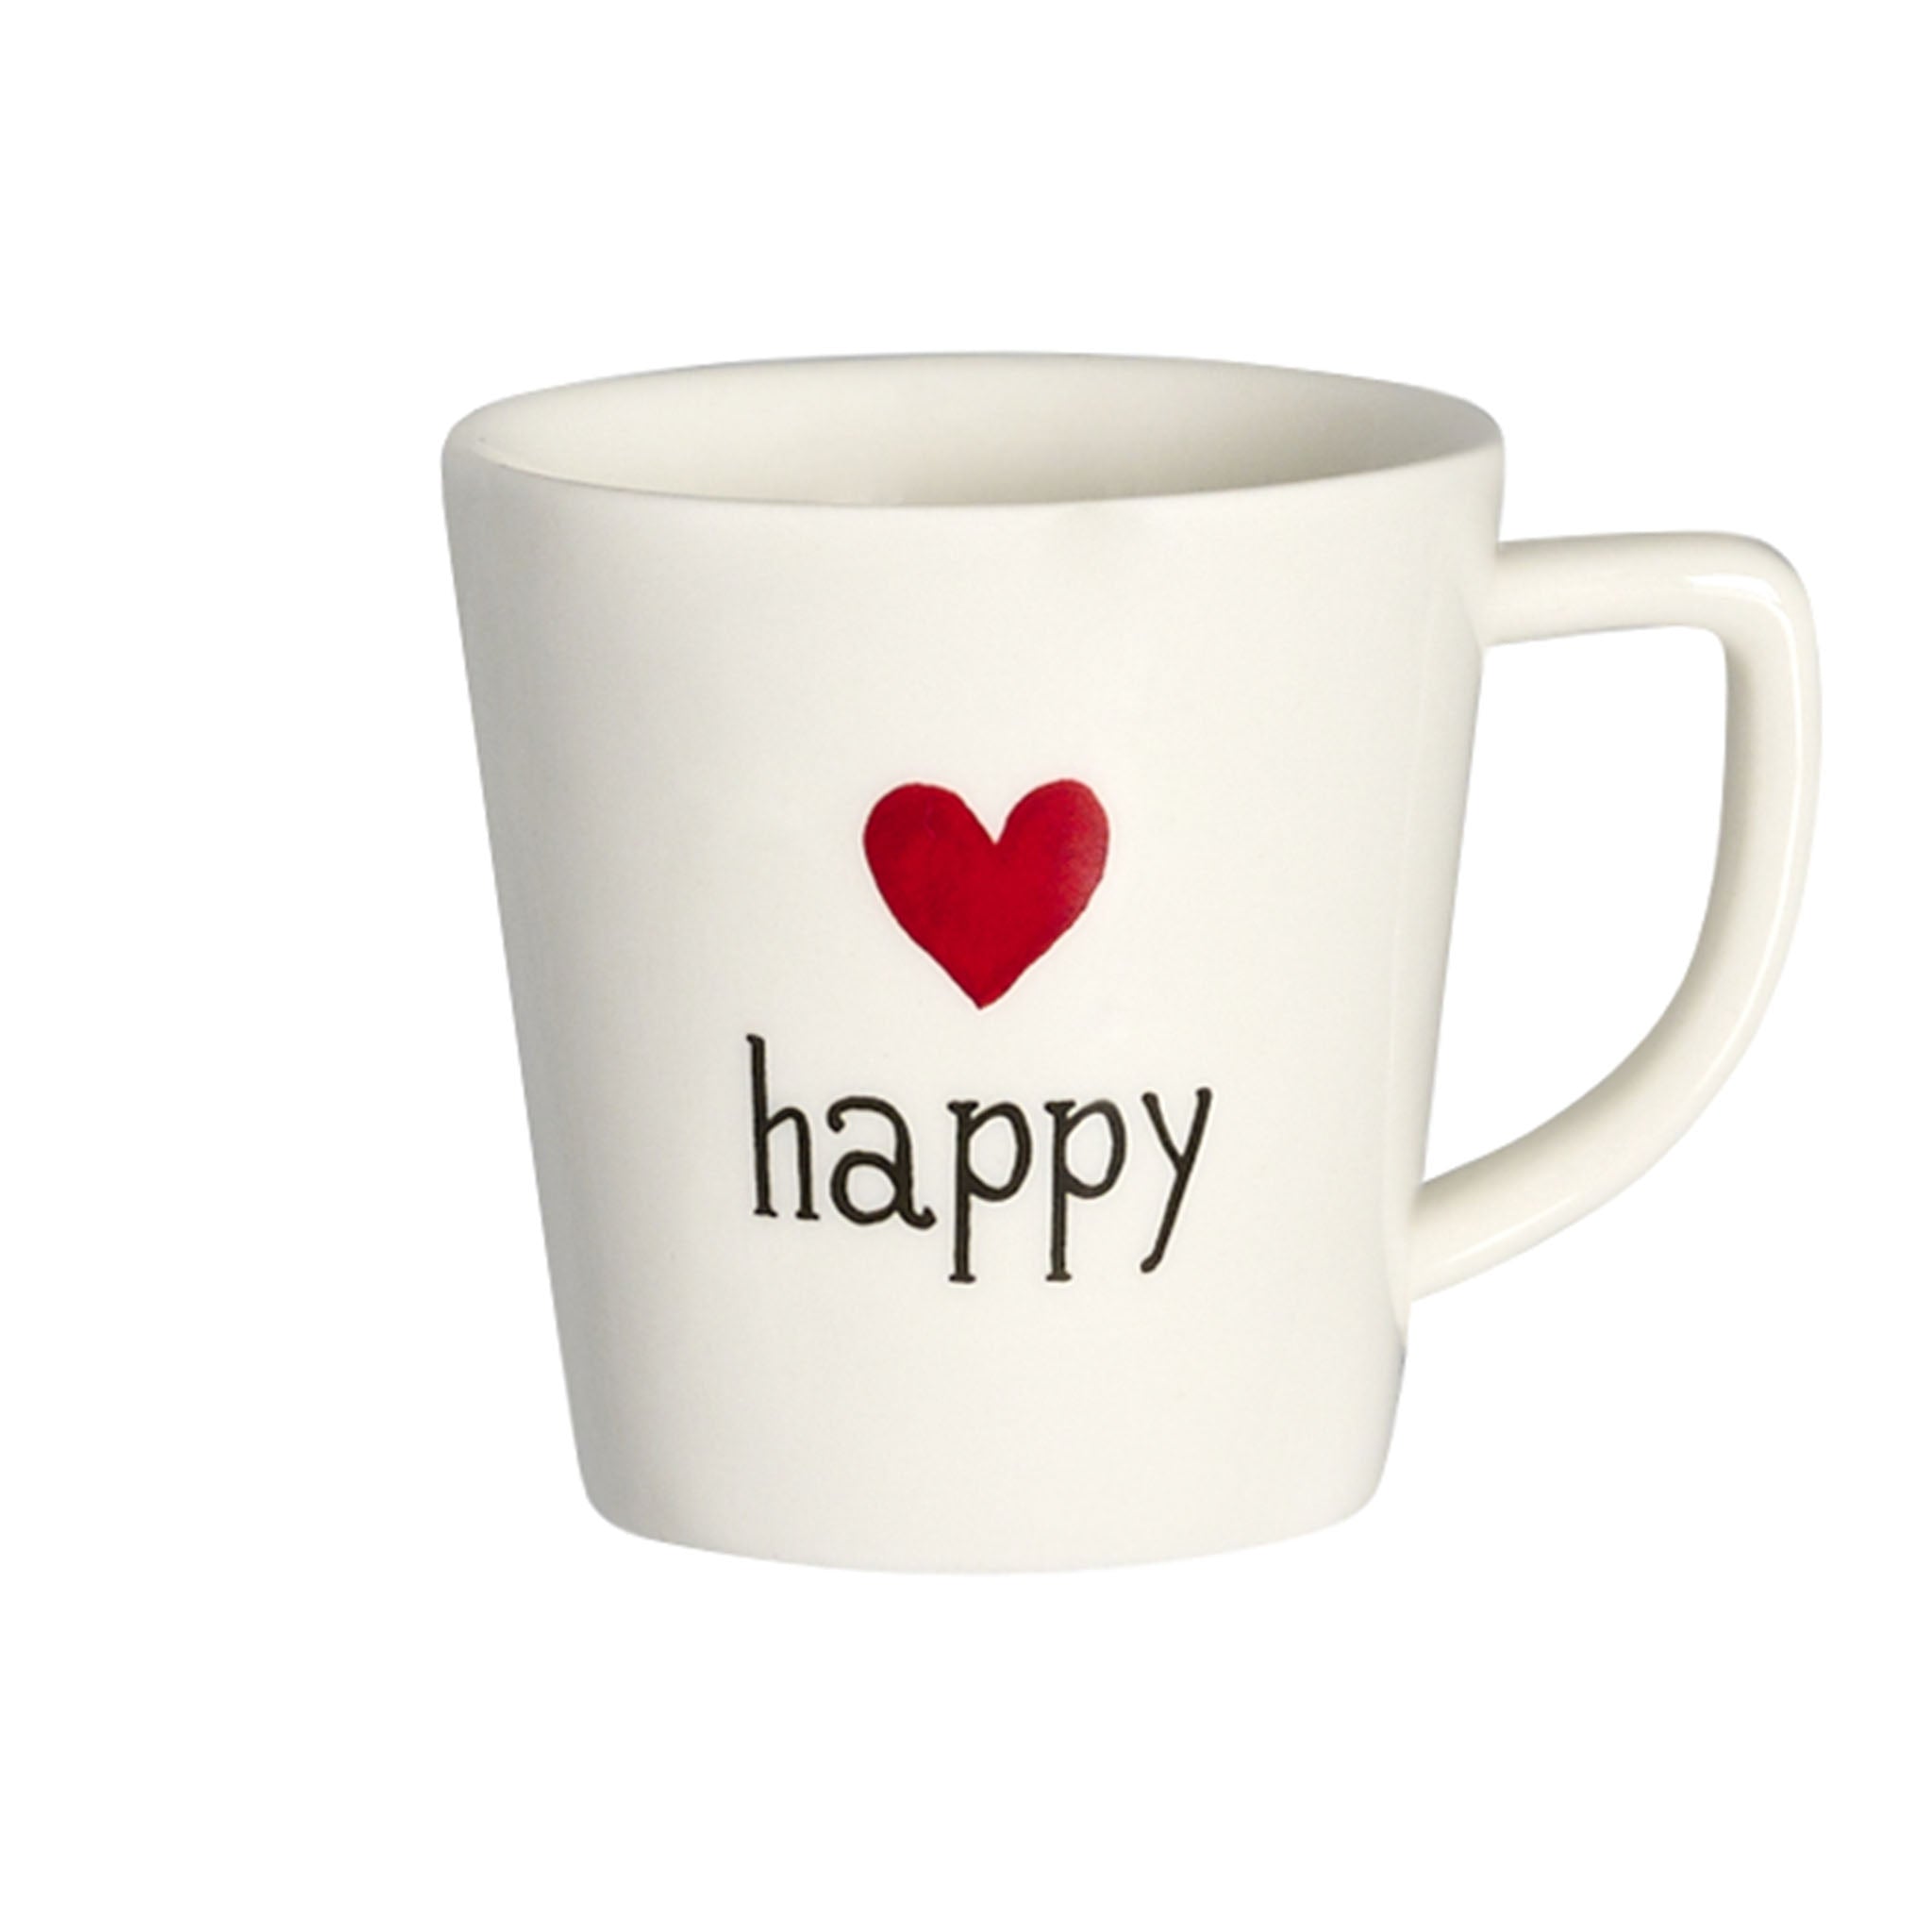 Happy Espresso Cup - Set of 2